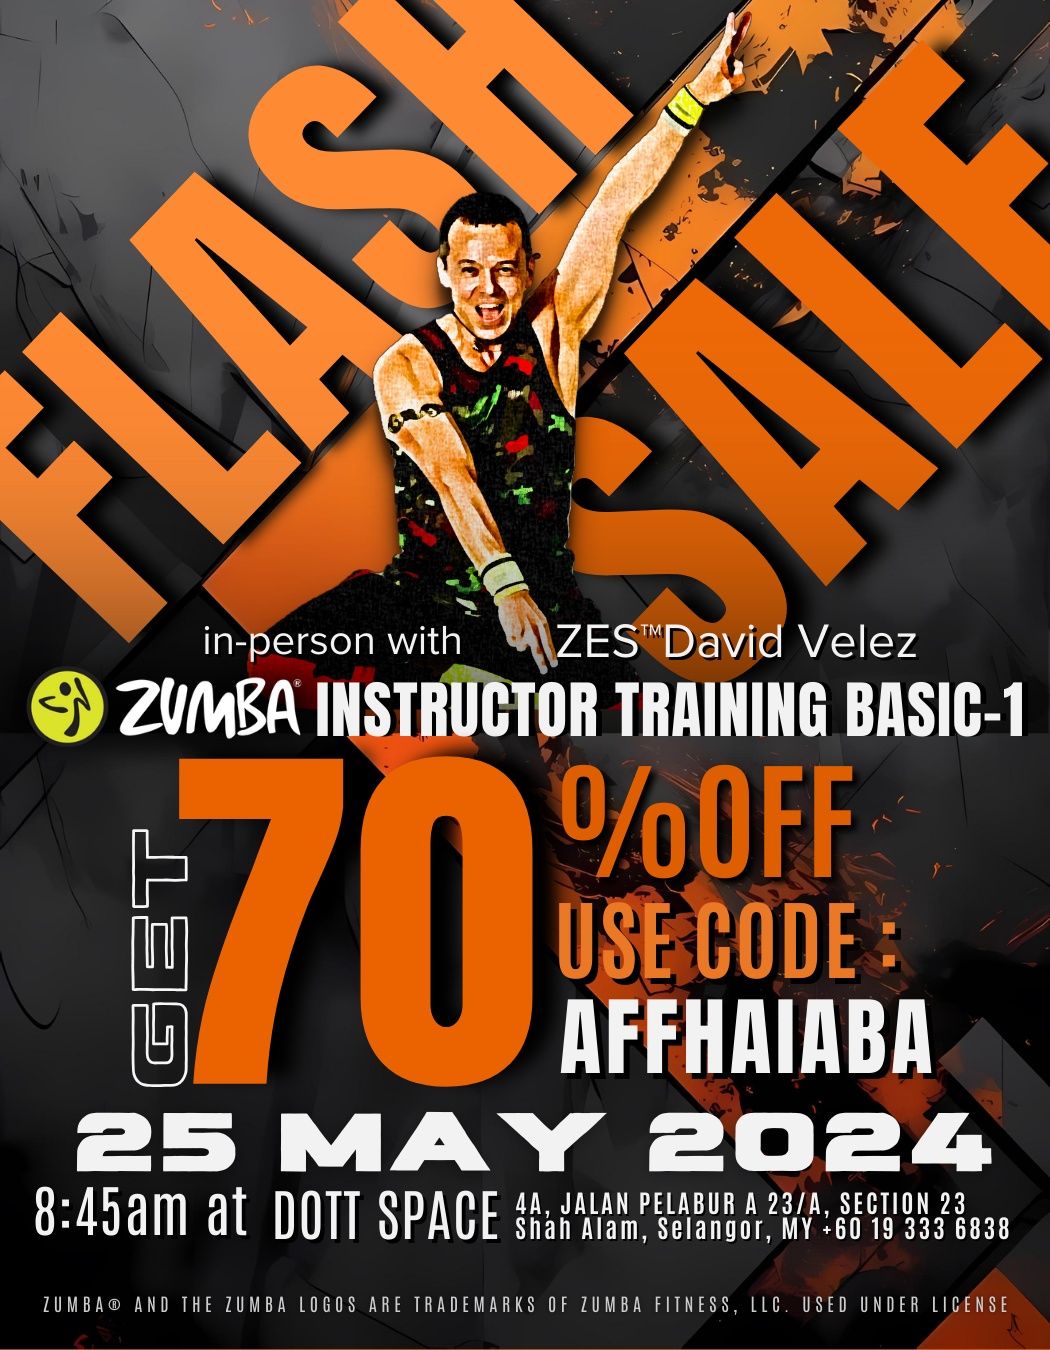 Zumba Basic 1 Training with David Velez